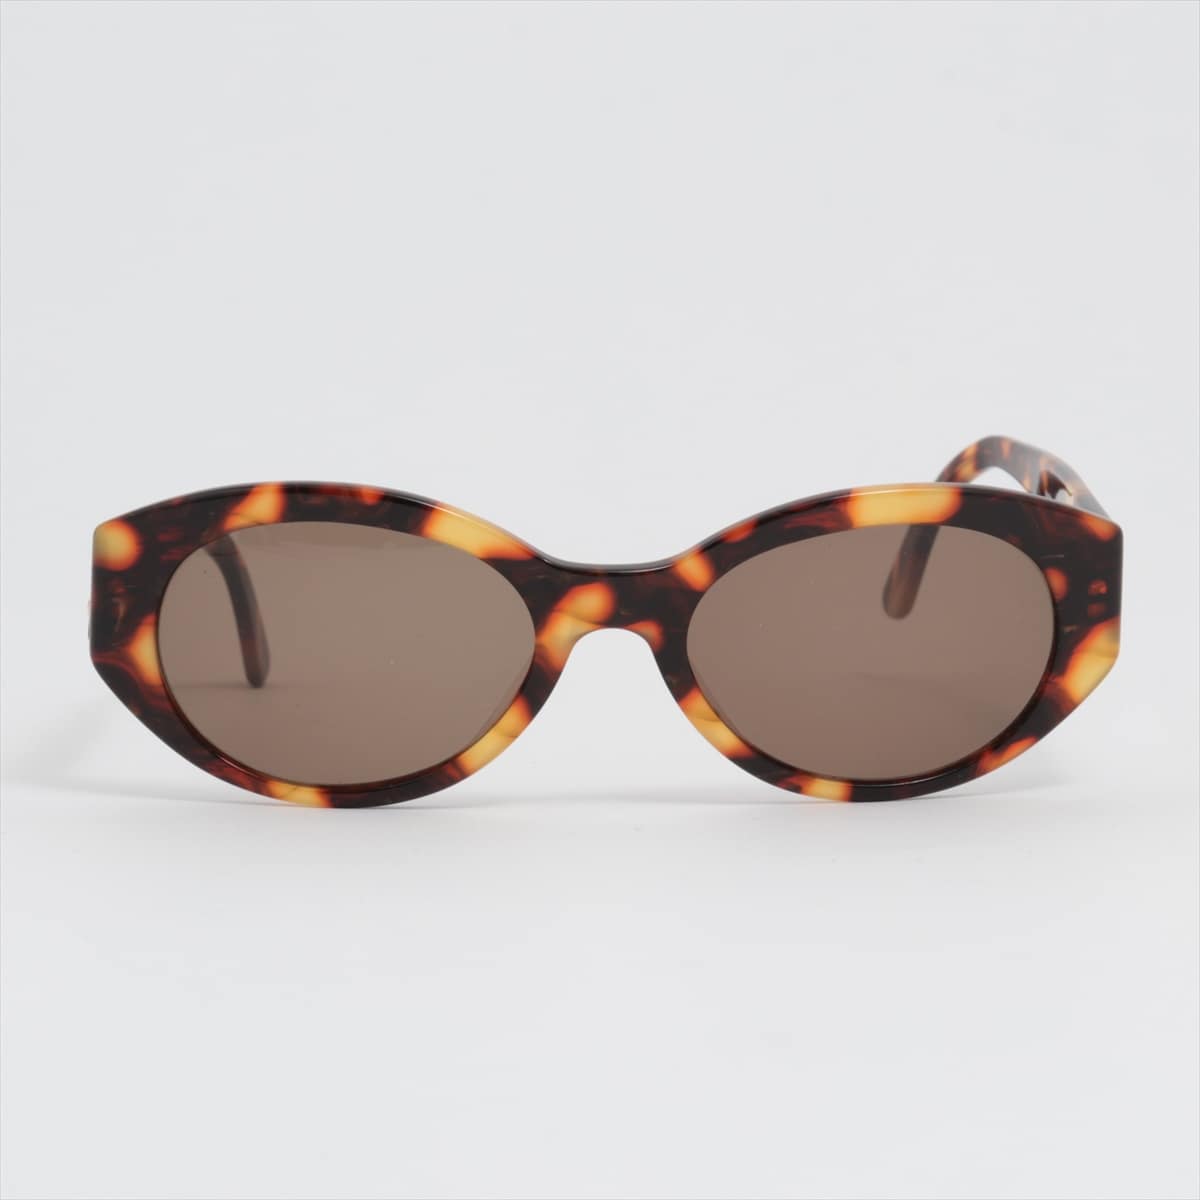 Chanel 03517 71340 Coco Mark Sunglasses Plastic Brown